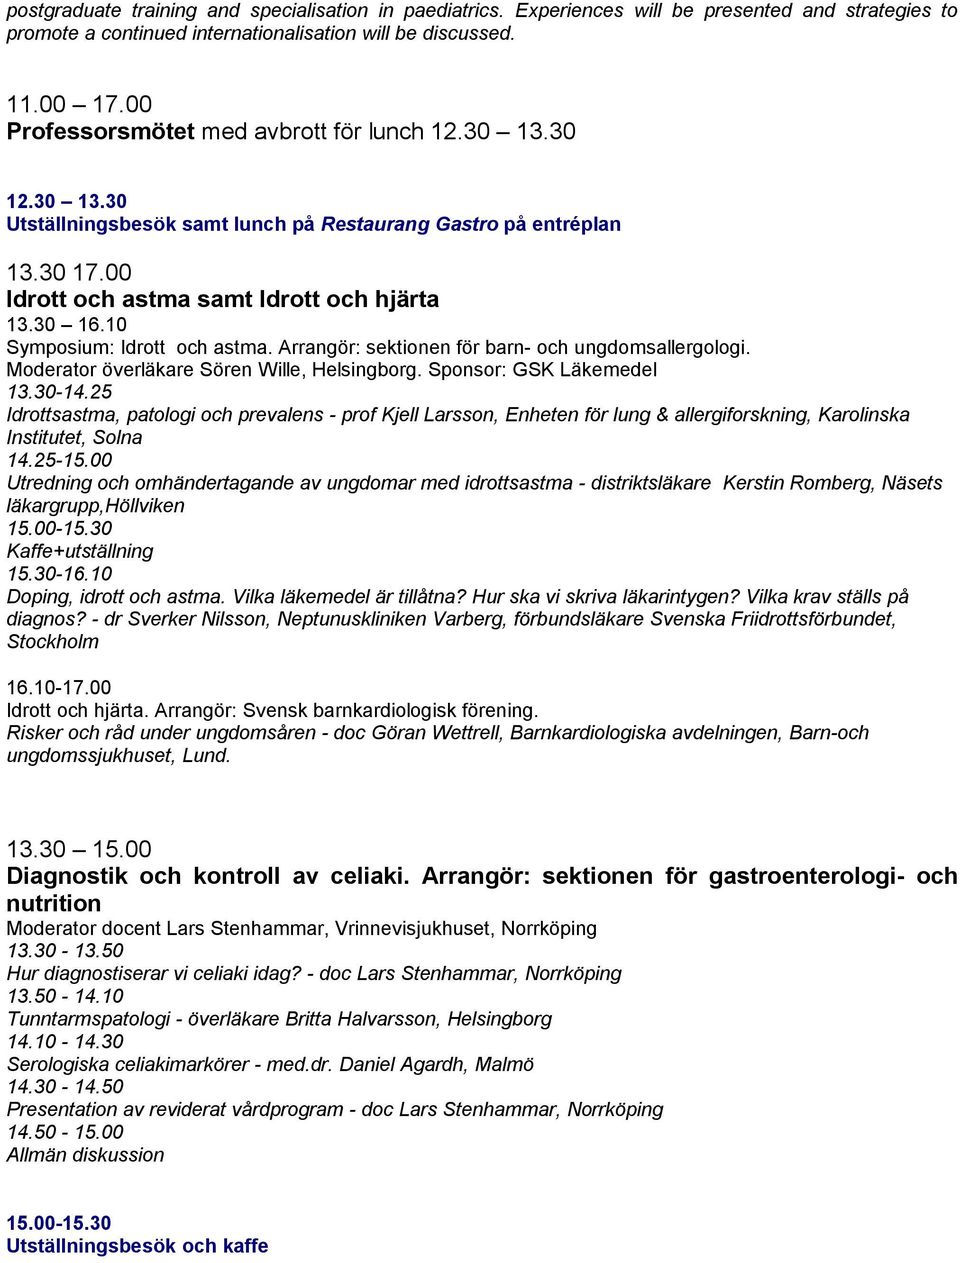 10 Symposium: Idrott och astma. Arrangör: sektionen för barn- och ungdomsallergologi. Moderator överläkare Sören Wille, Helsingborg. Sponsor: GSK Läkemedel 13.30-14.